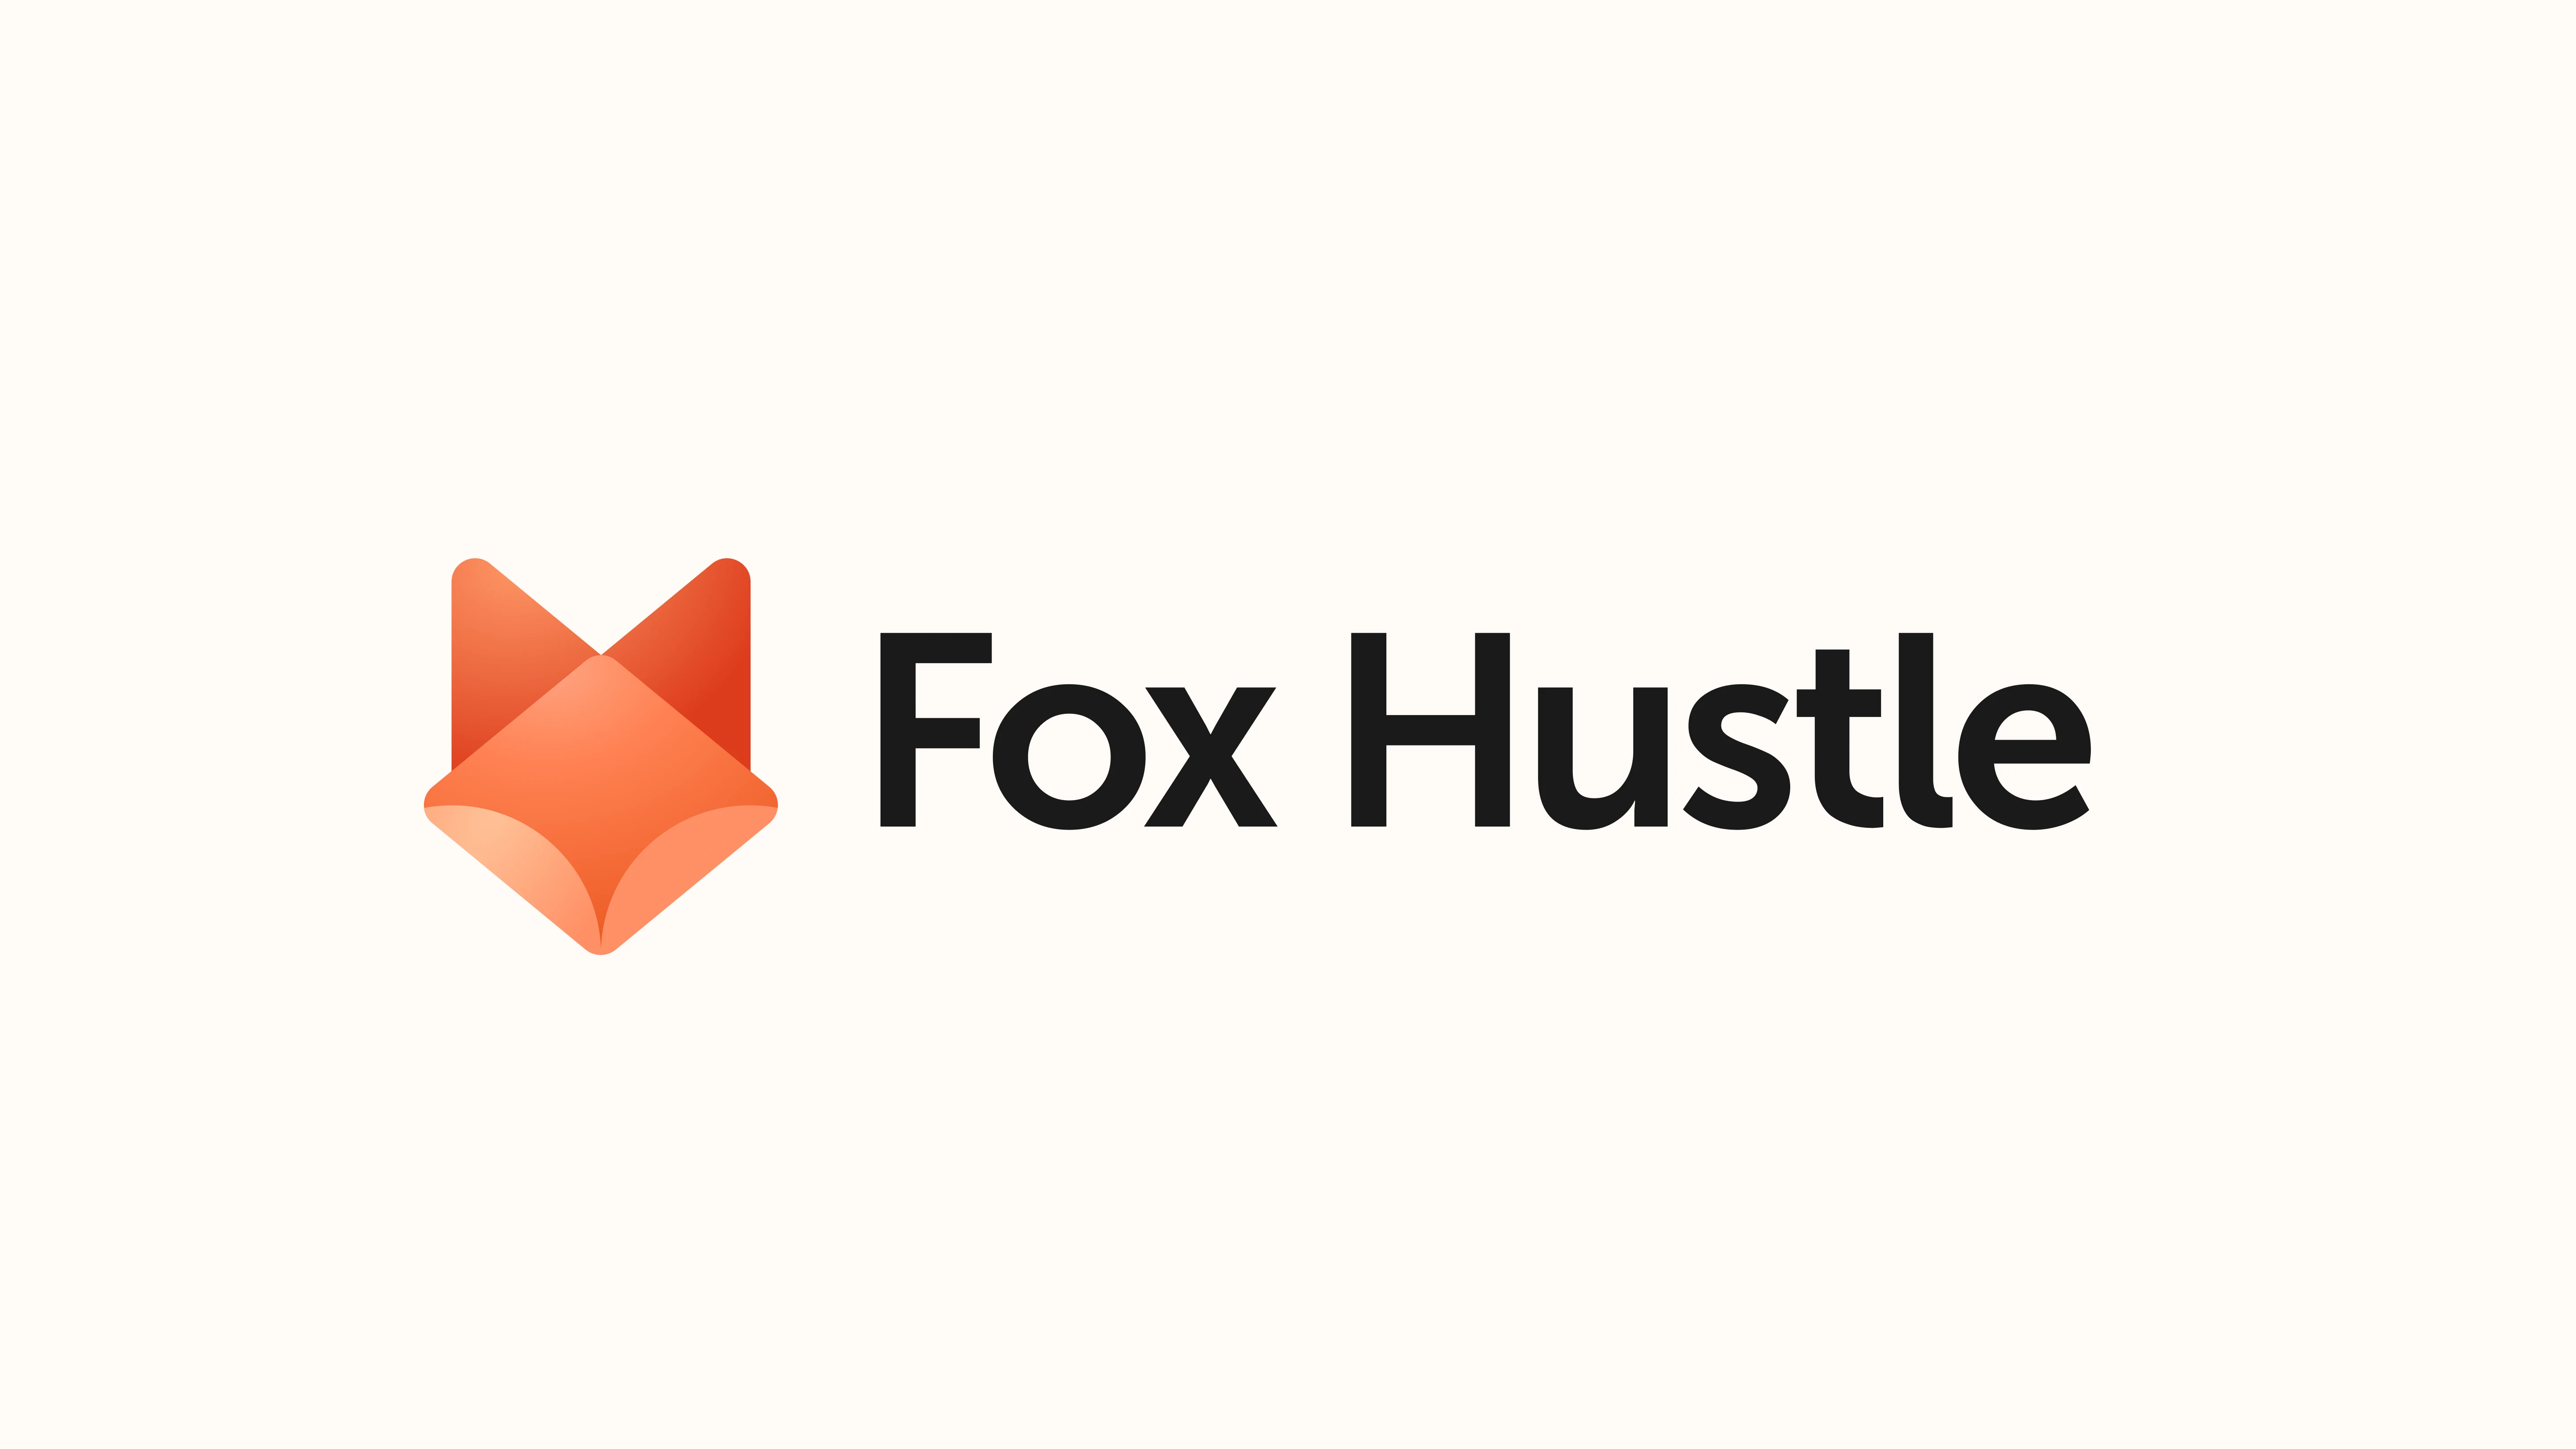 FoxHustle